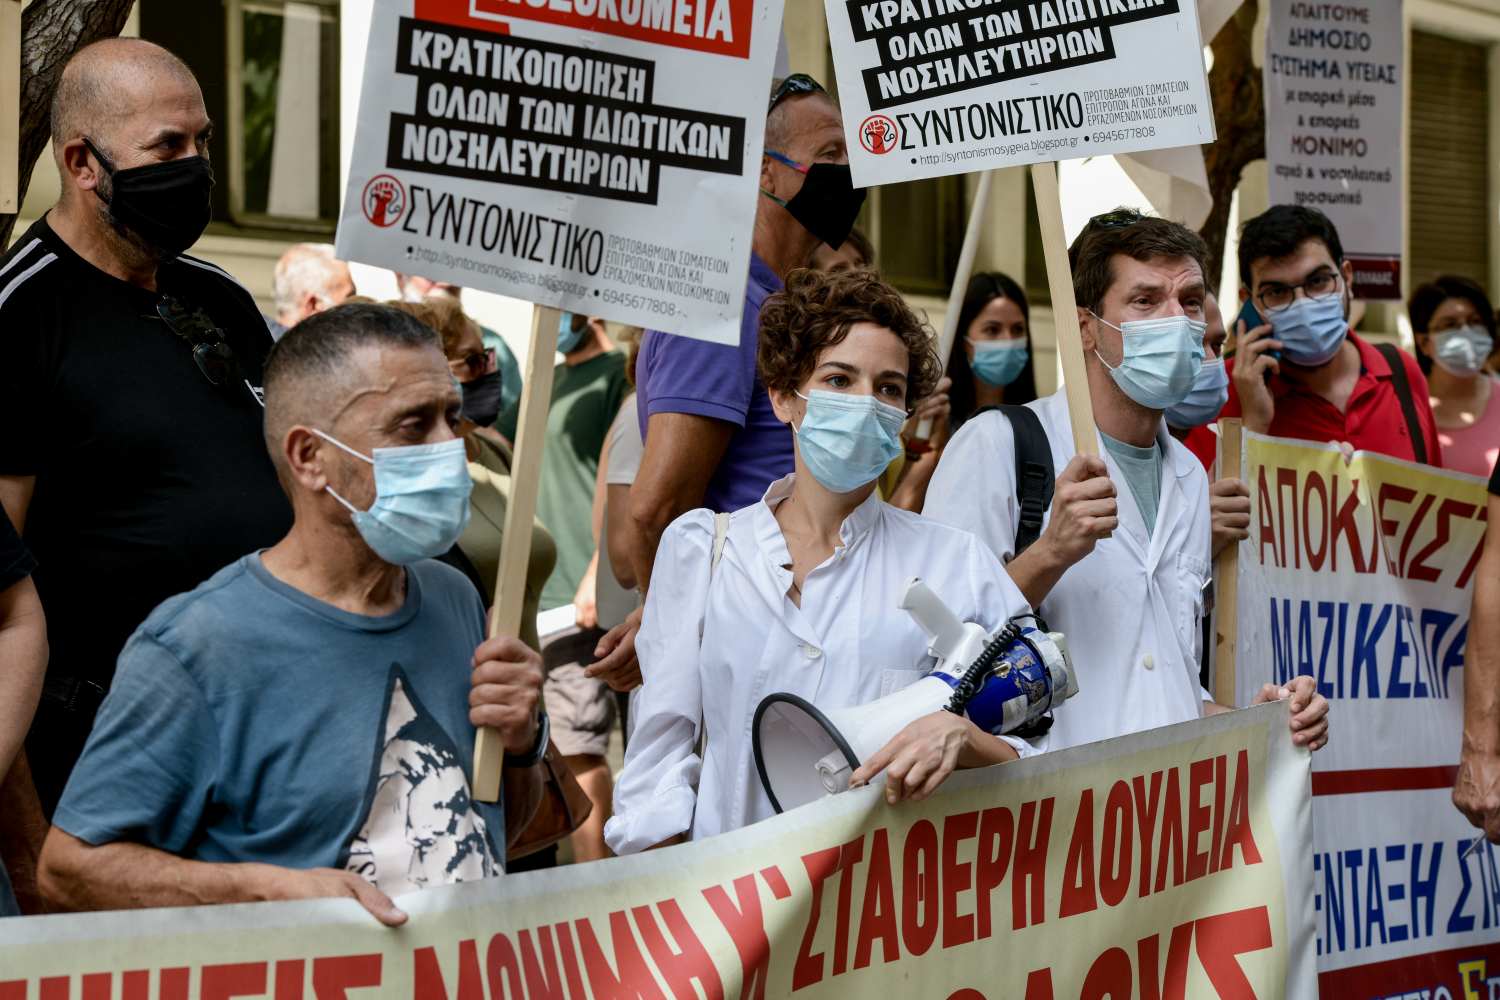 Οι νοσοκομειακοί γιατροί στο πλευρό της ΛΟΑΤΚΙ+ κοινότητας: Κάλεσμα στο Athens Pride